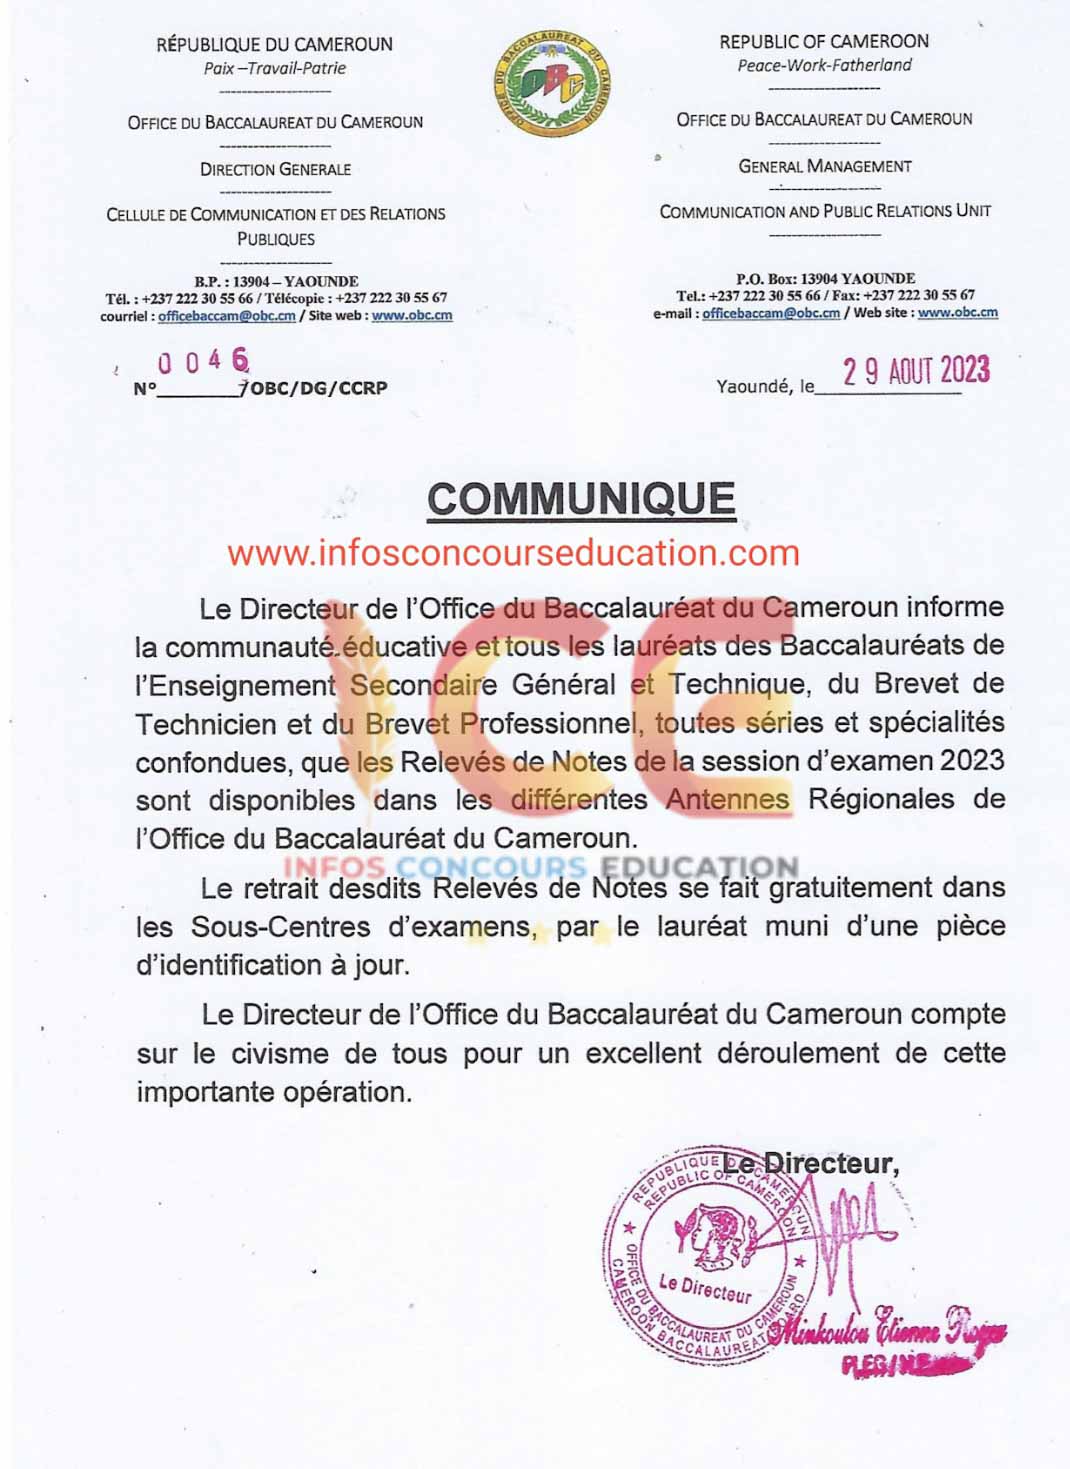 Communiqué de l'office du baccalauréat cameroun: les relevés de note des examens officiels de la session 2023 sont disponibles!